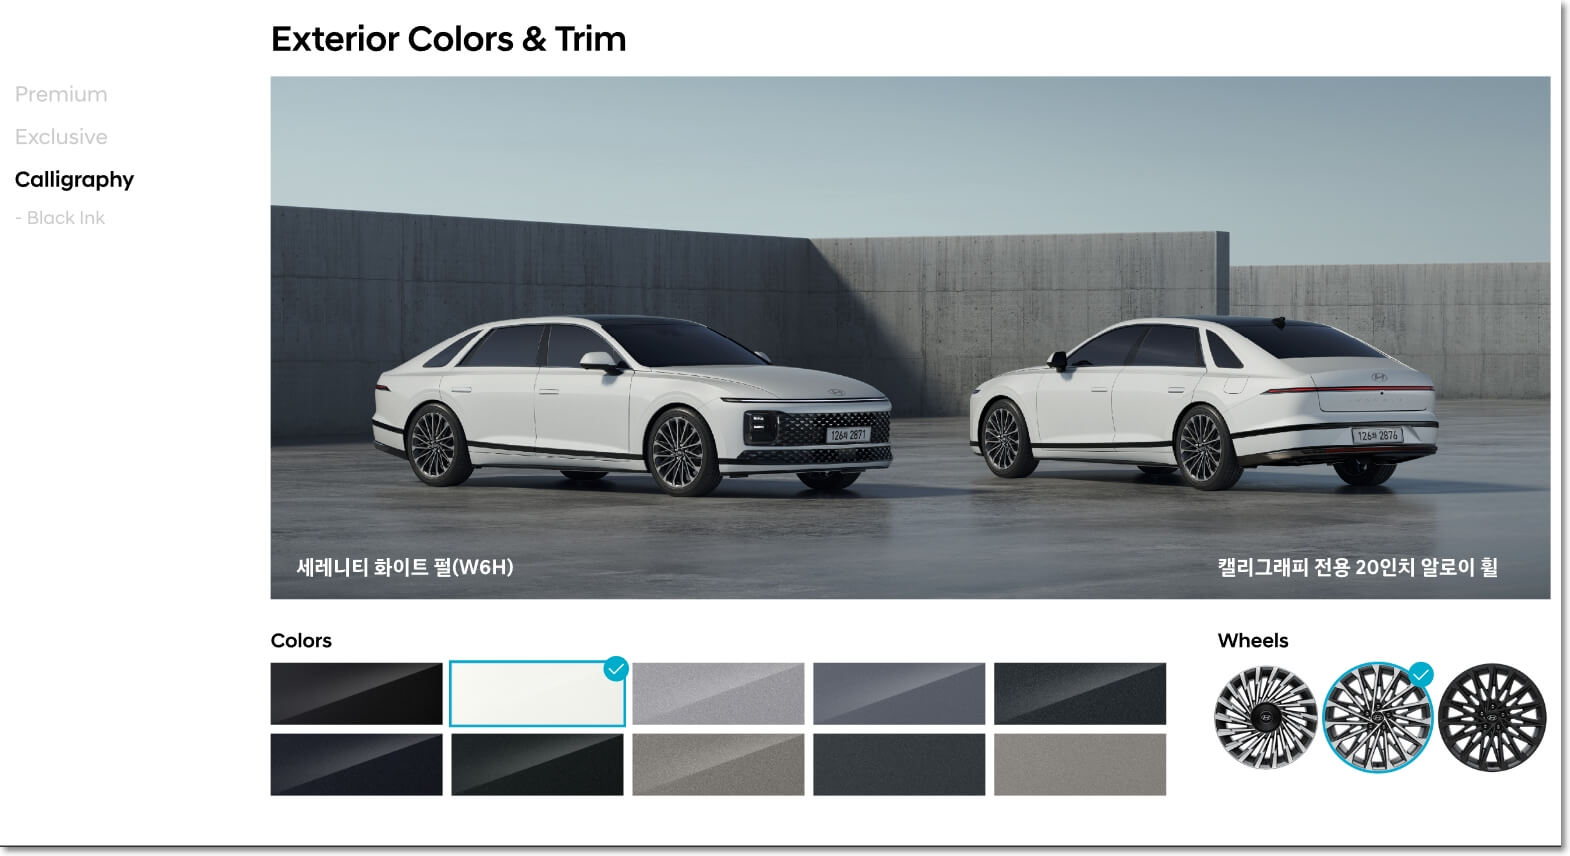 그랜저 하이브리드 카탈로그에서 발췌한 외관 색상 10가지 및 휠 디자인 등을 표시한 사진입니다.